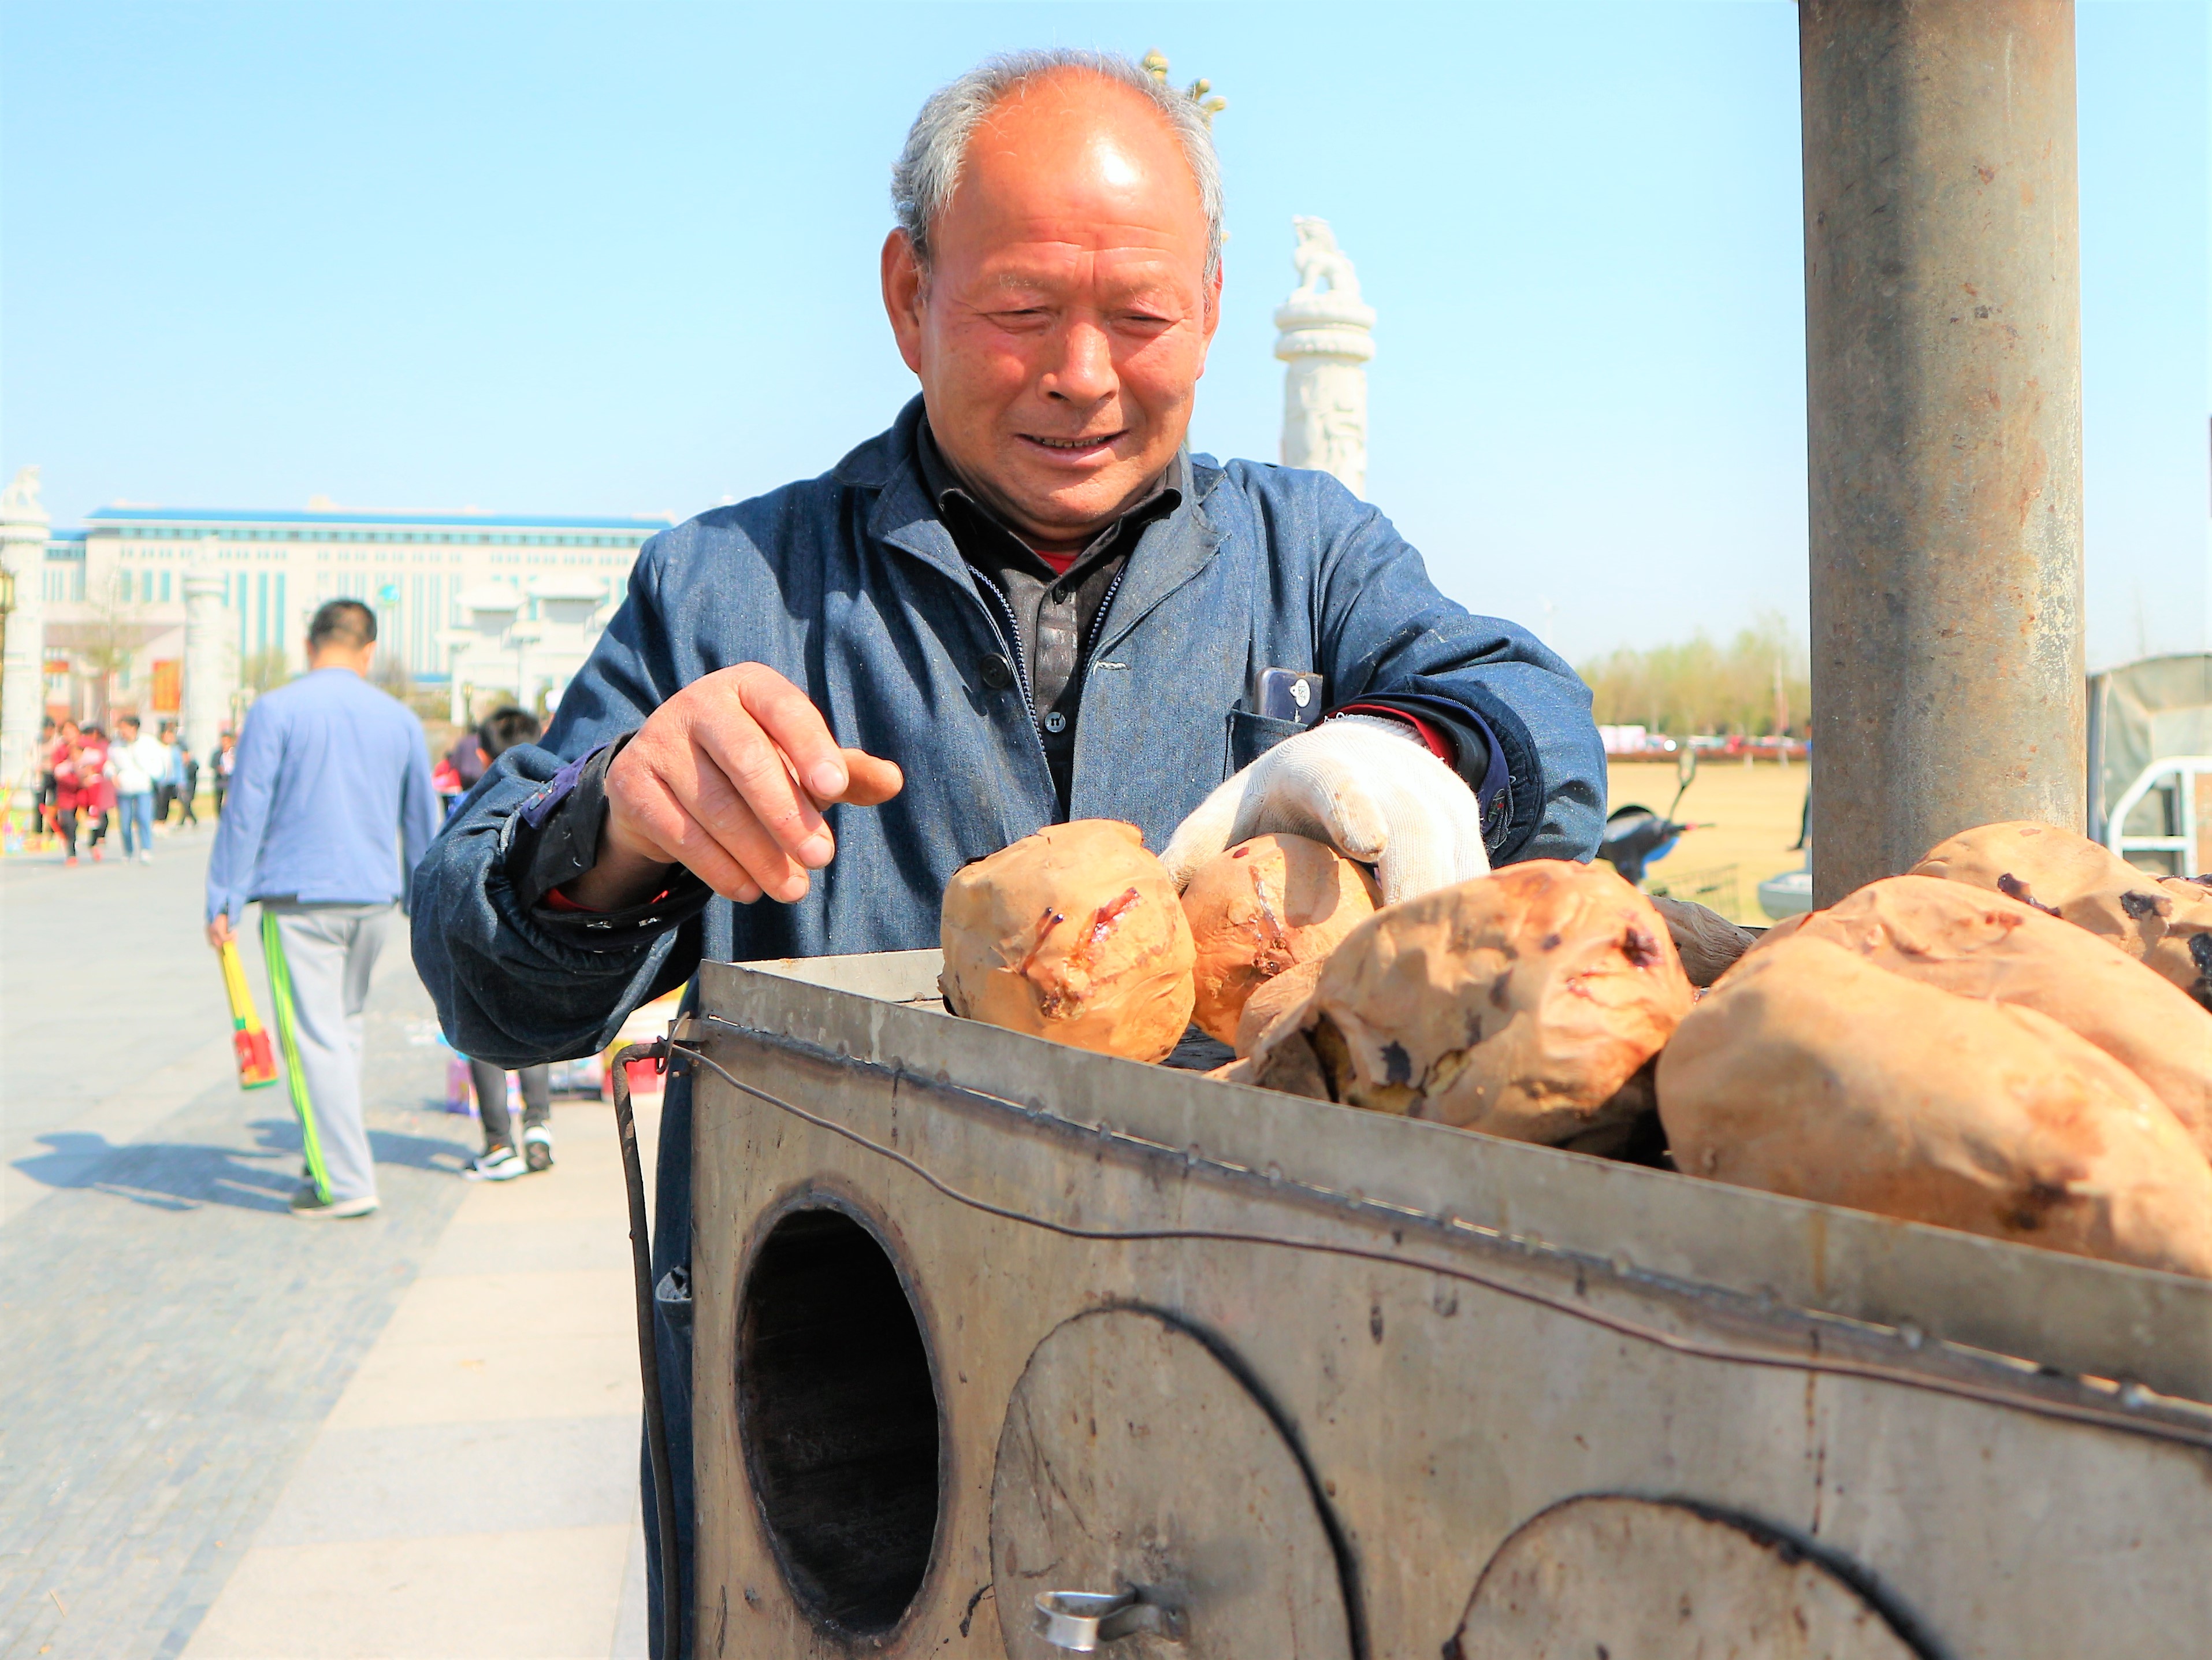 72岁农村老人卖烤红薯20年凭三轮车养家糊口背后故事让人感动